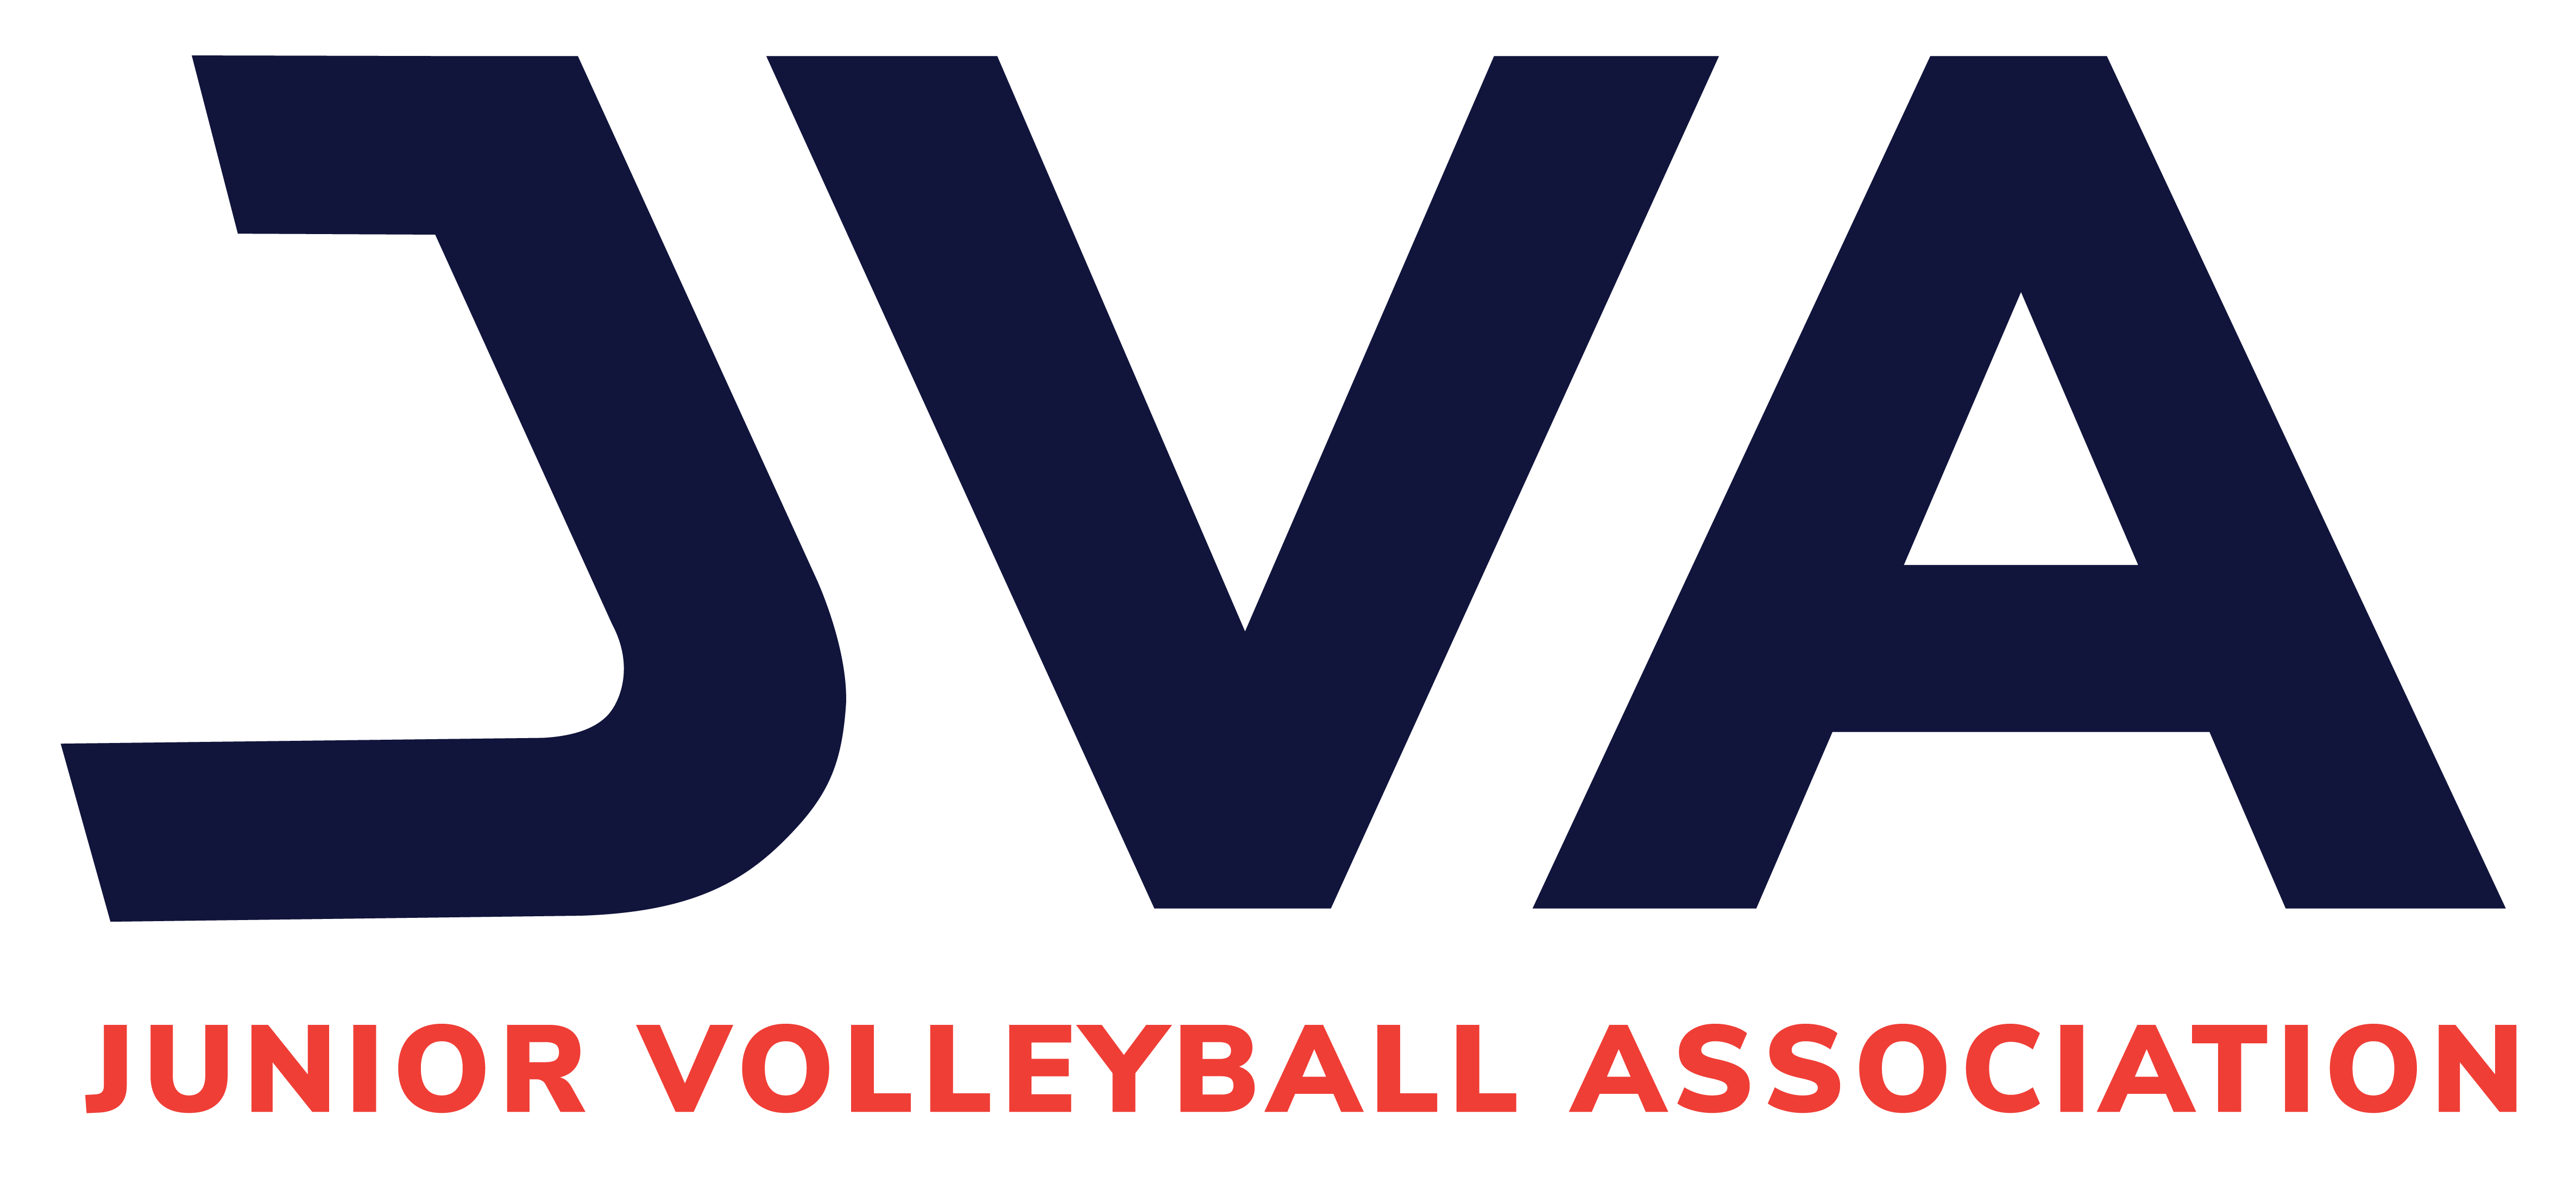 jva - junior volleyball association logo